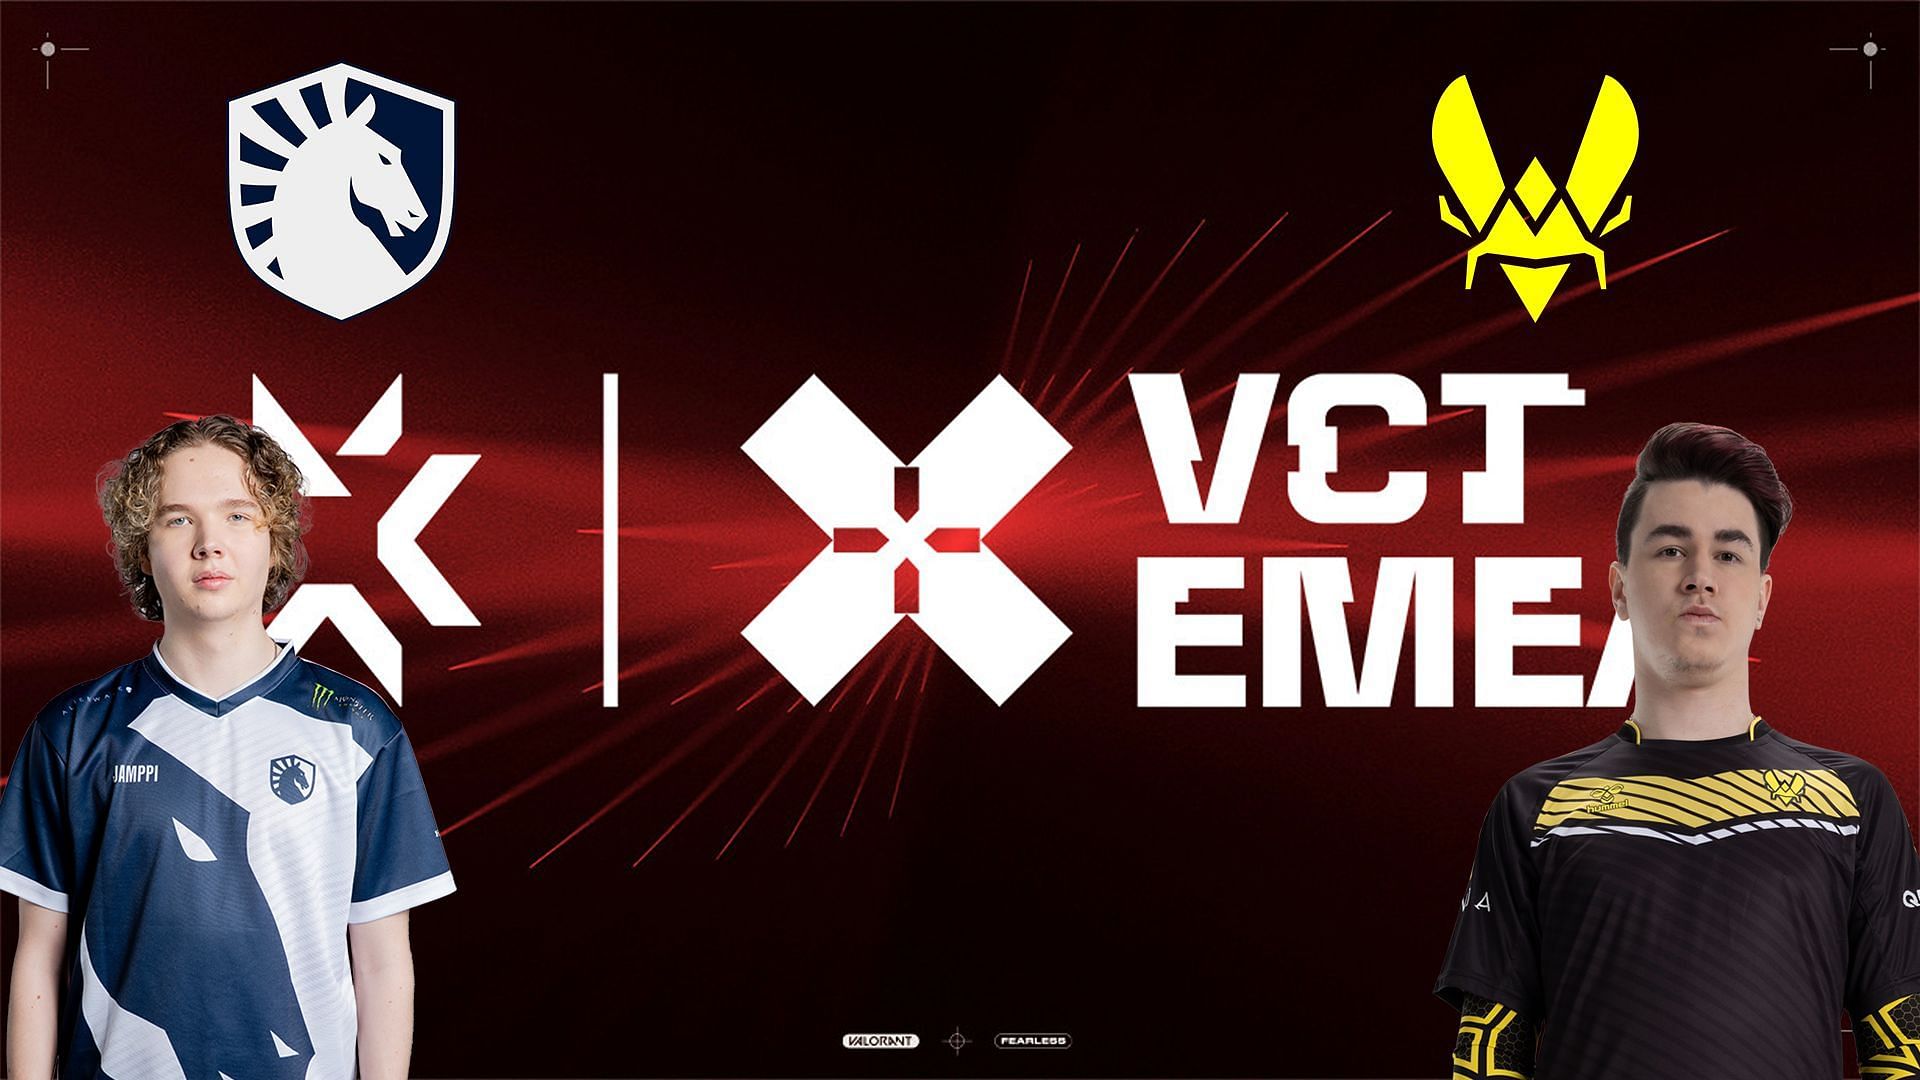 Team Liquid vs Team Vitality at VCT EMEA League (Image via Sportskeeda)